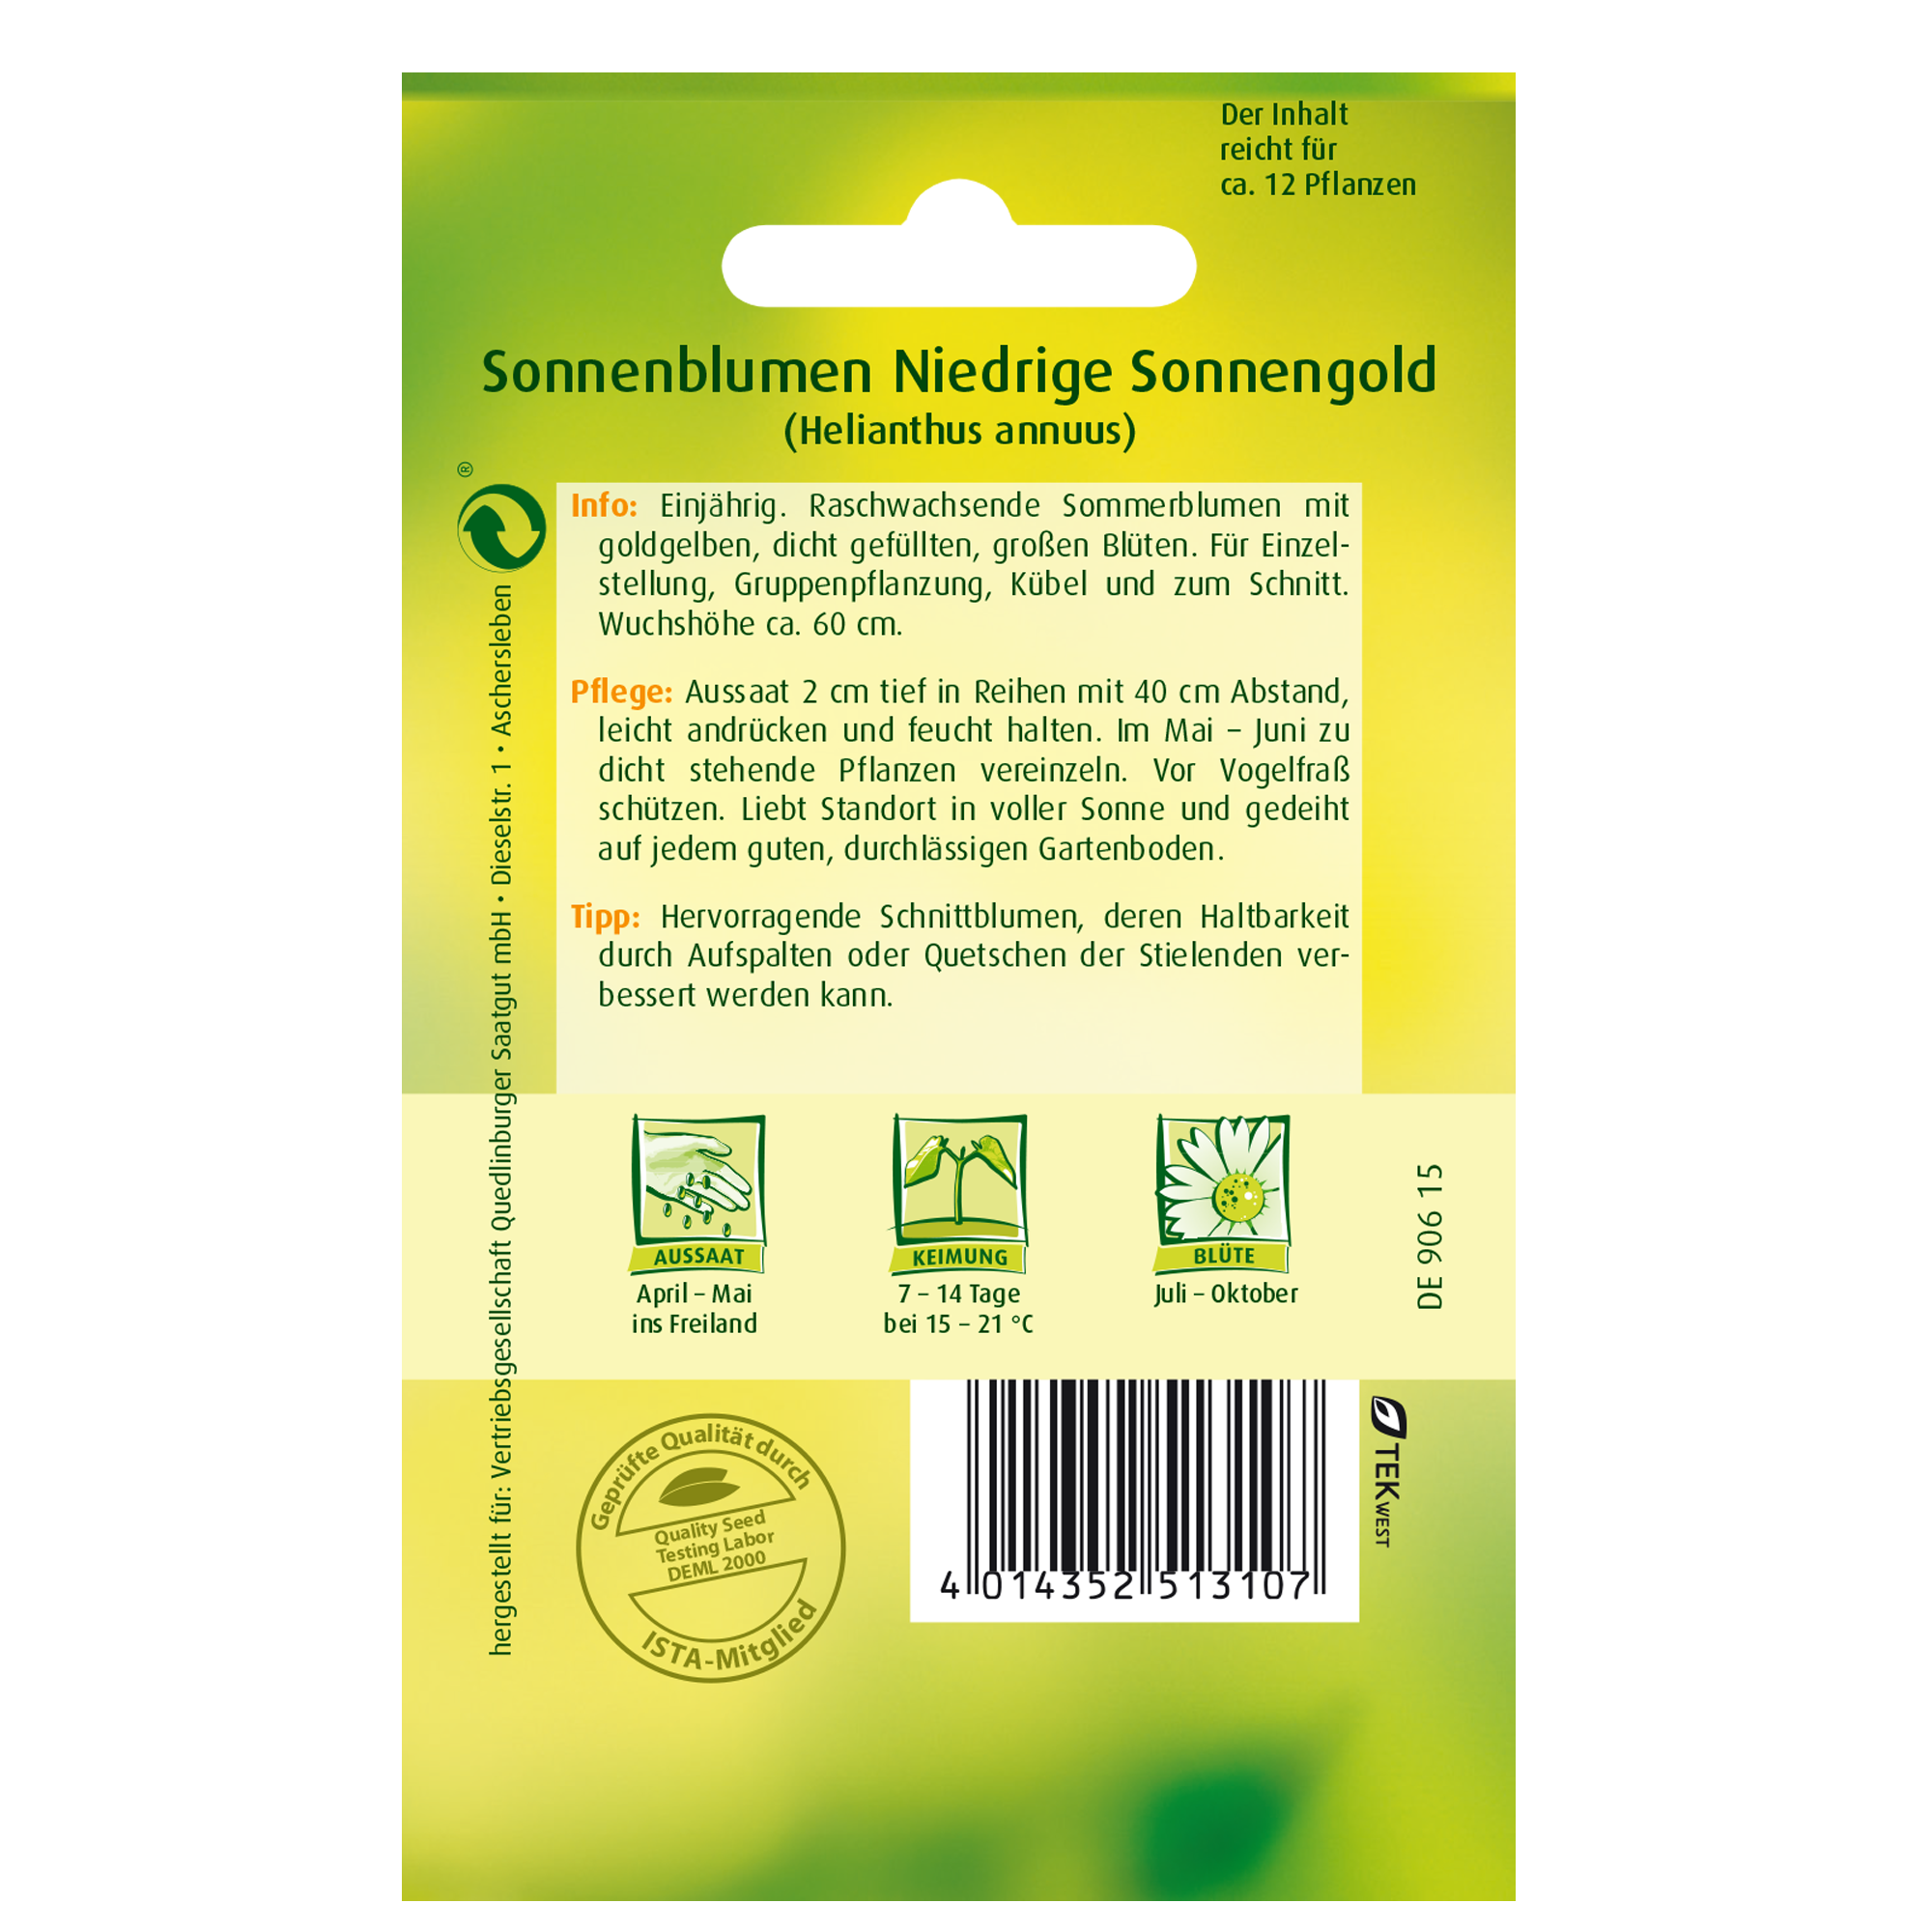 Sonnenblumen 'Niedrige Sonnengold' + product picture